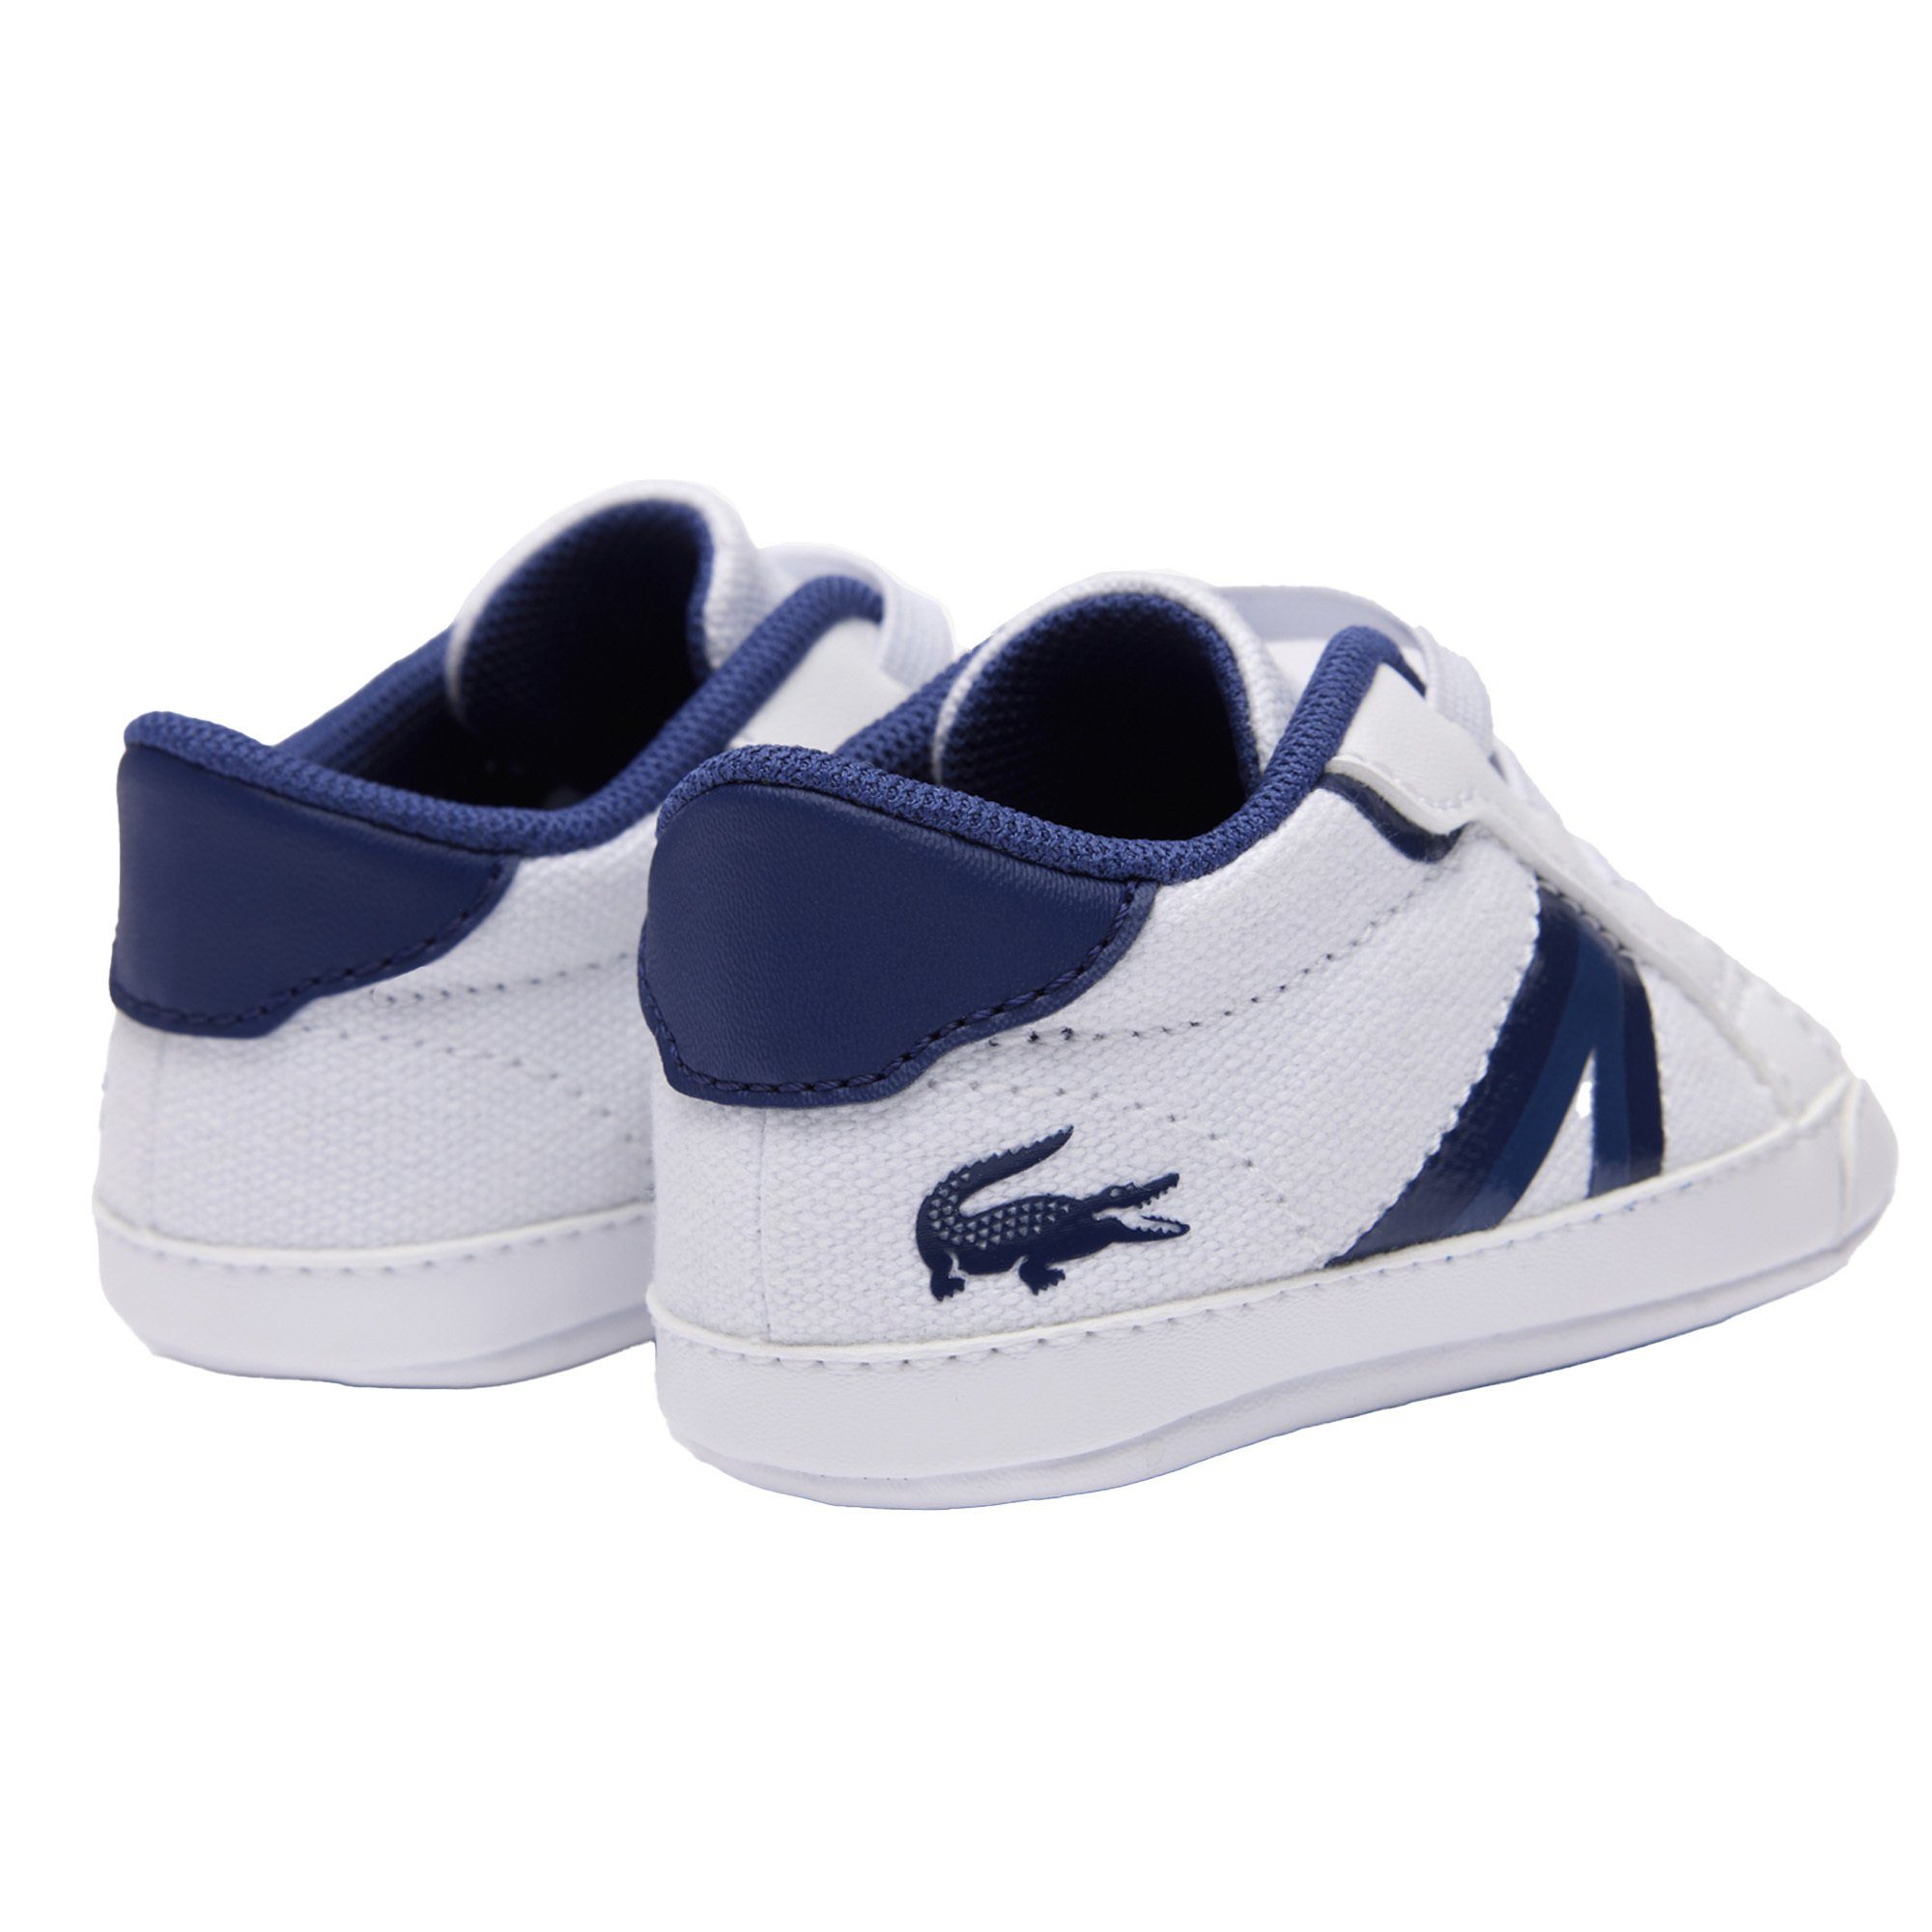 Schuhe Cub, Krabbelschuh Krabbelschuhe, - Sneaker, Baby Weiß/Blau Lacoste L004